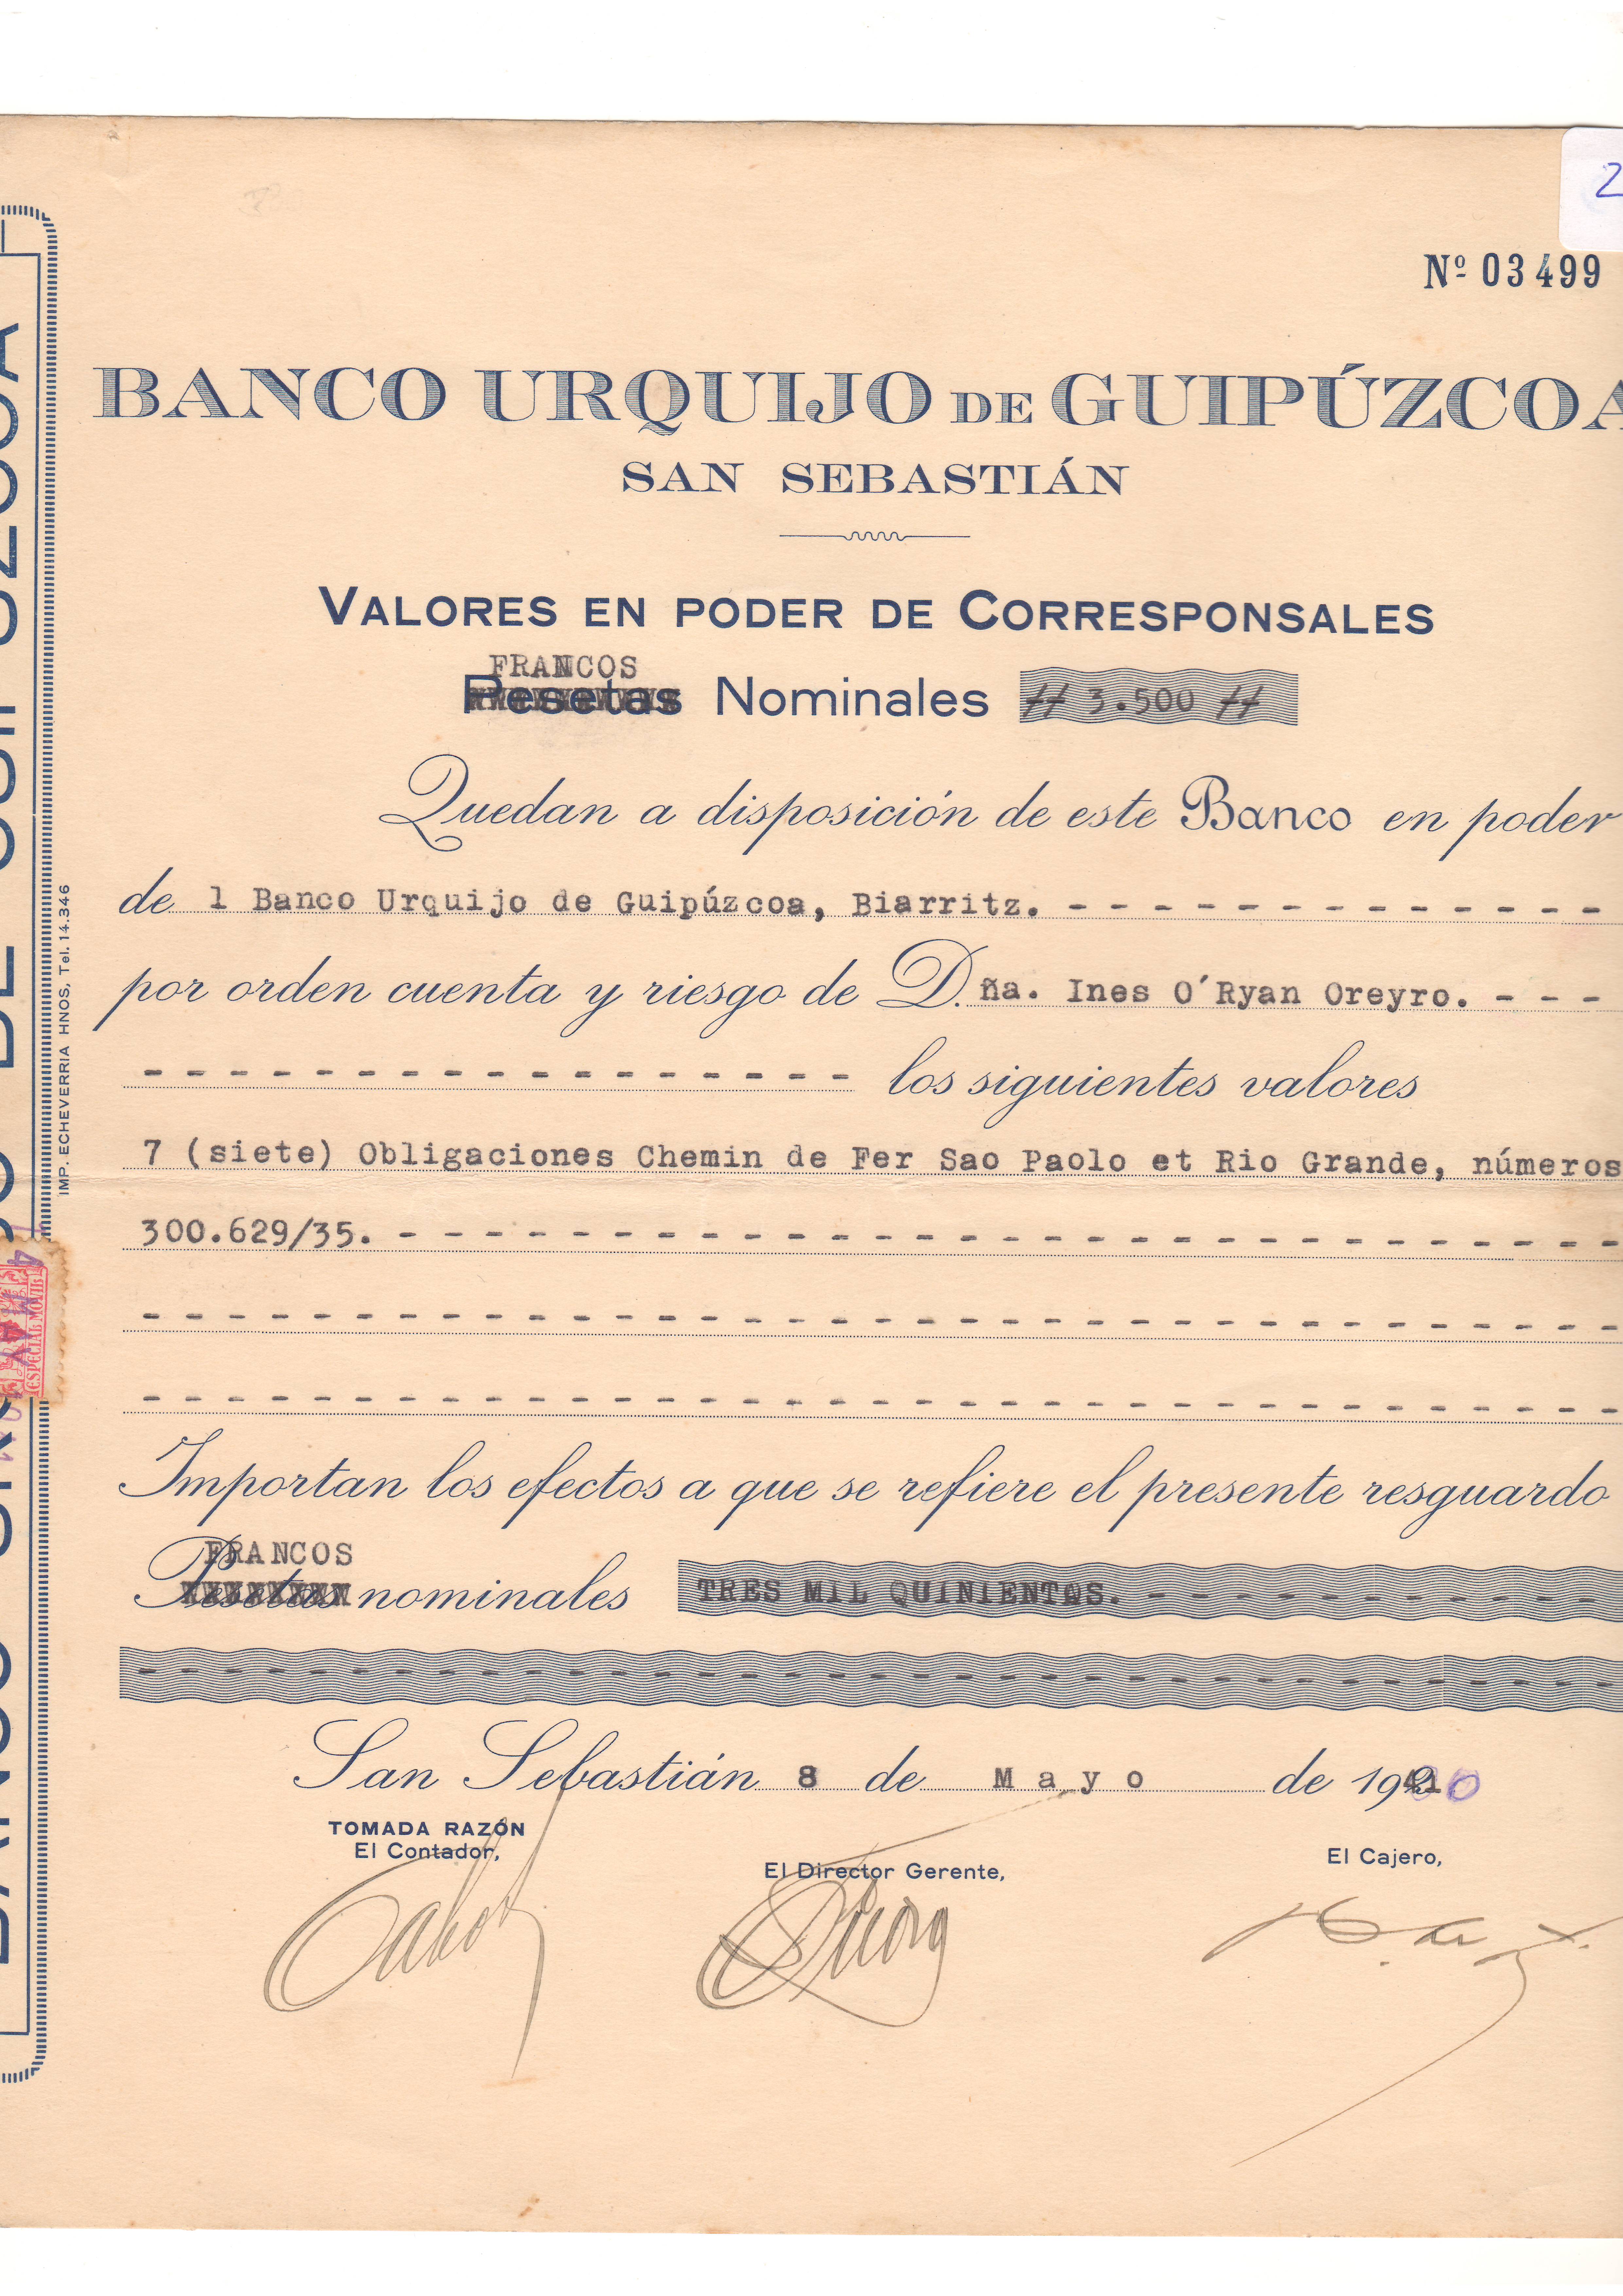 Banco Urquijo de Guipúzcoa: resguardo de depósito de valores